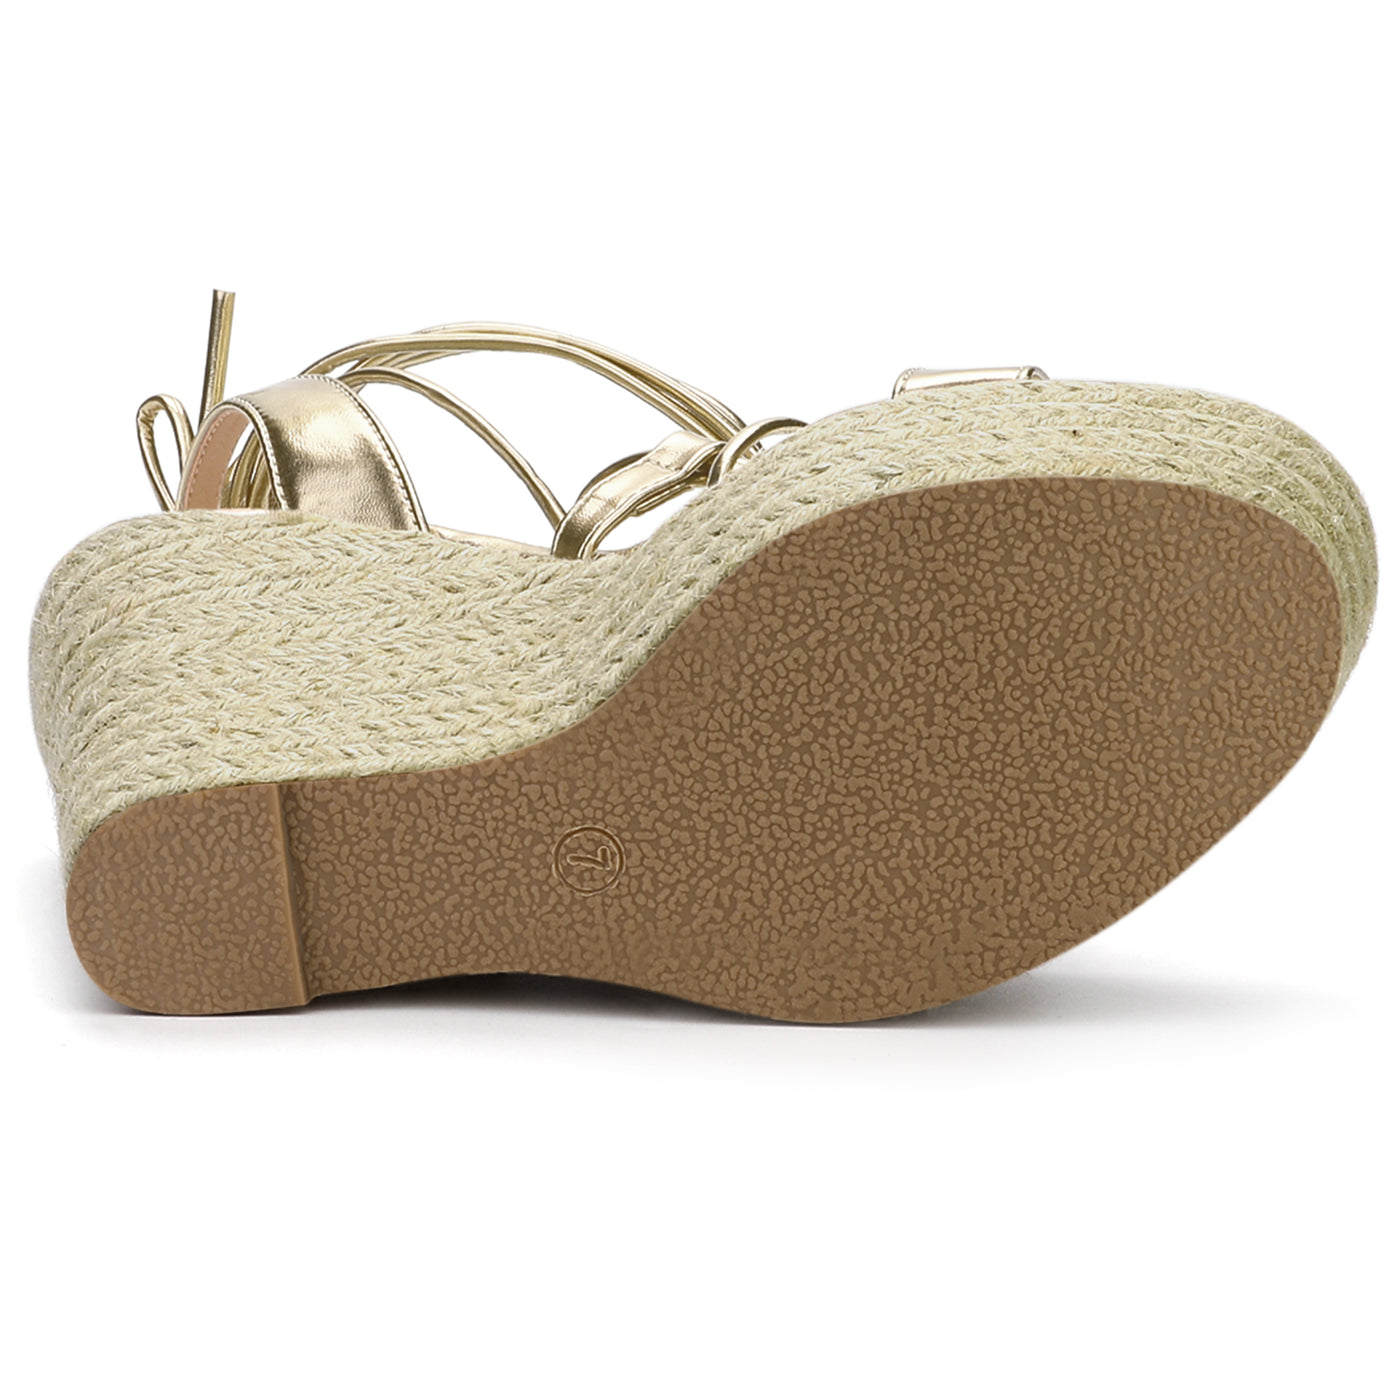 Allegra K Espadrilles Platform Wedges Heel Lace Up Sandals